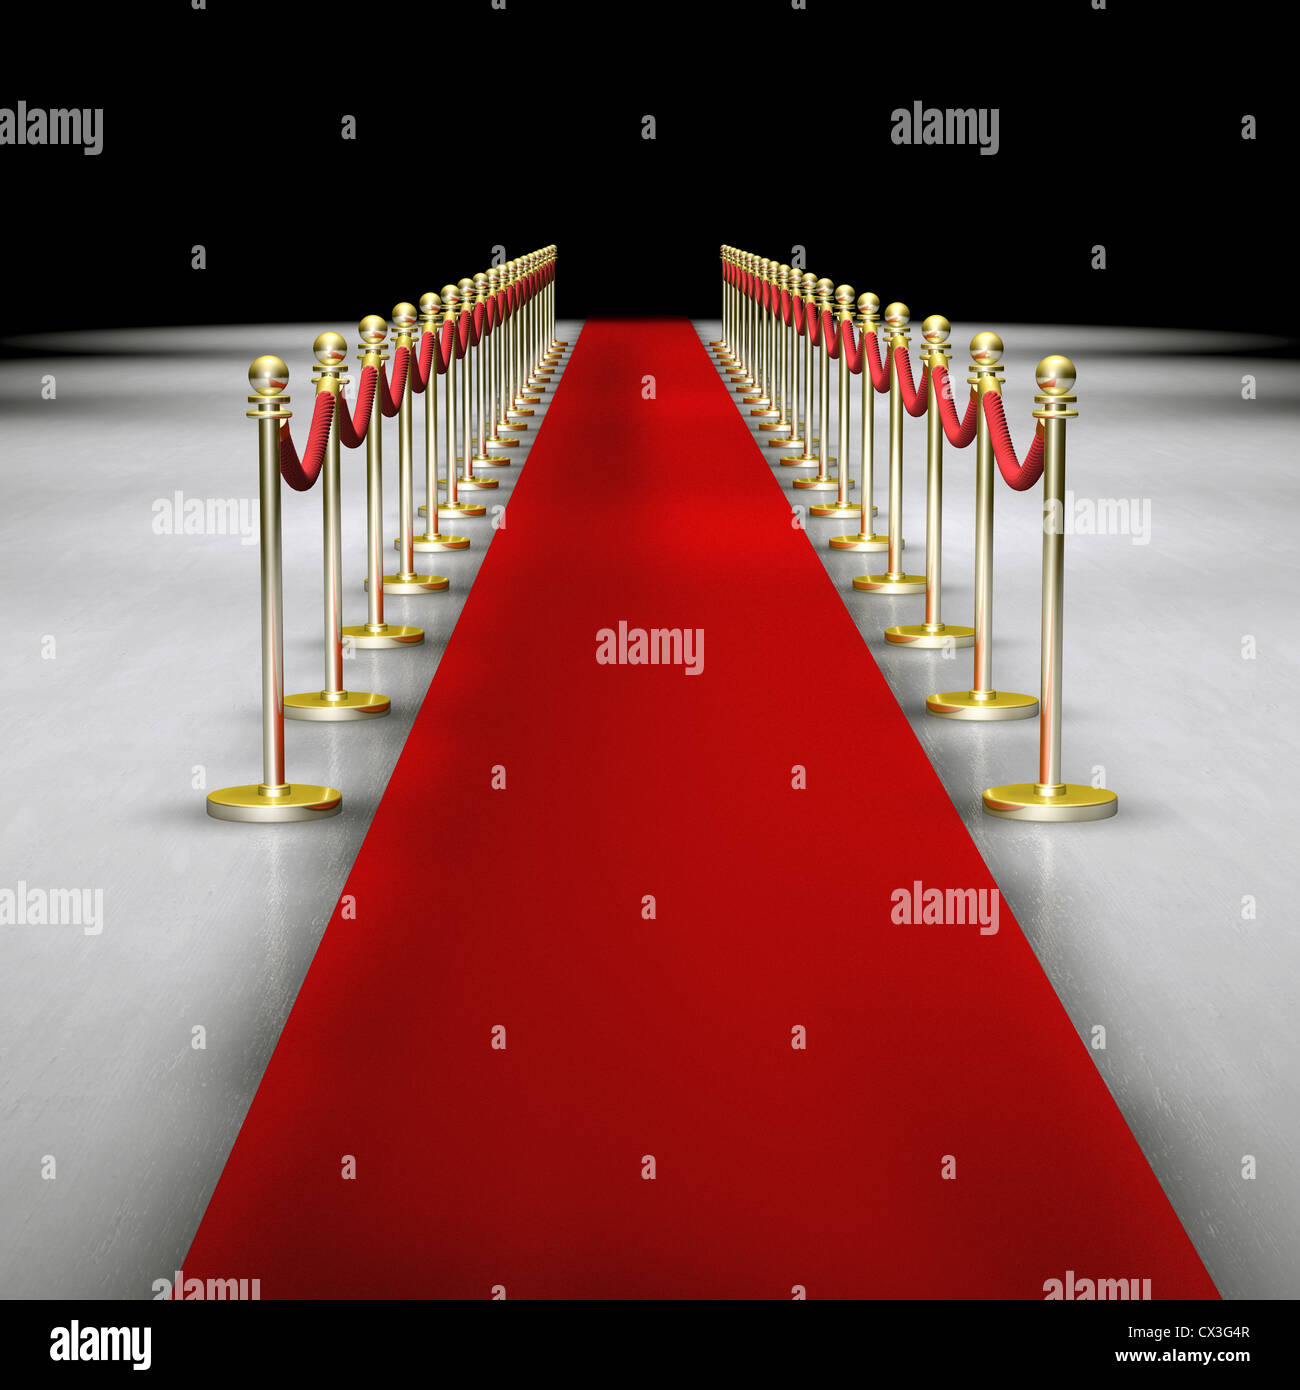 Roter Teppich mit Absperrung - tapis rouge et d'une corde ou une ficelle pour tenir les gens à l'écart Banque D'Images